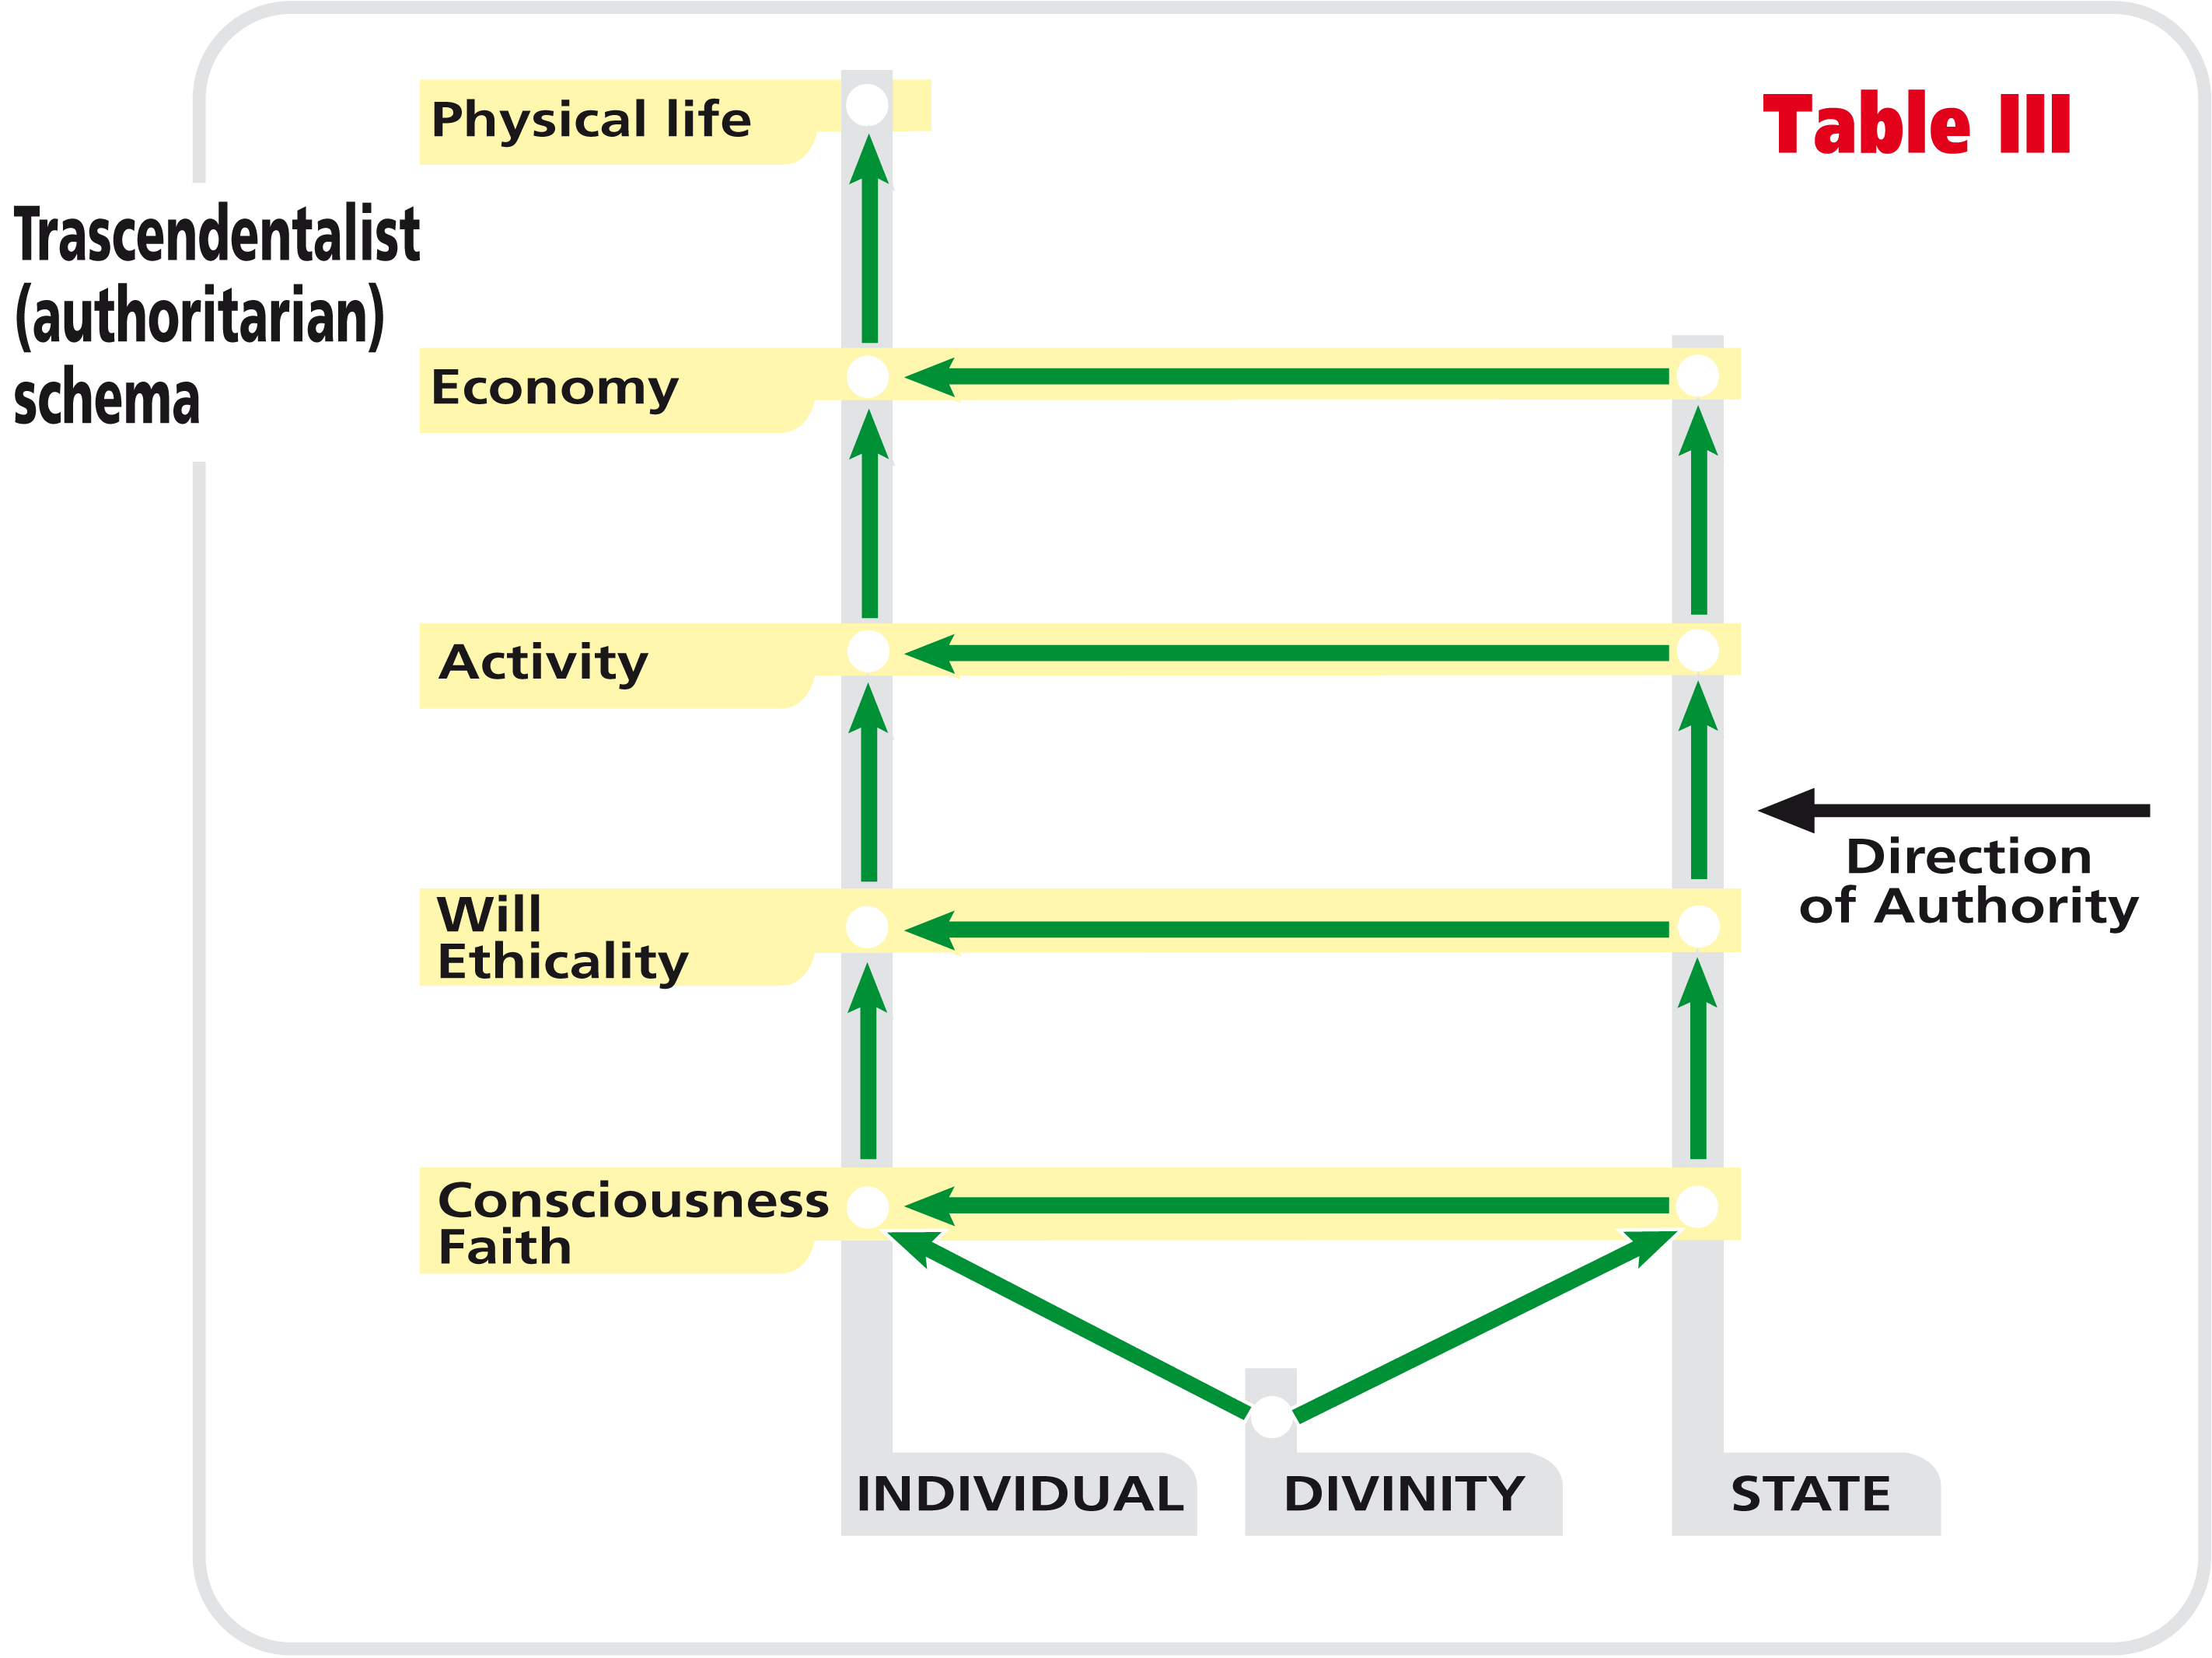 Table III